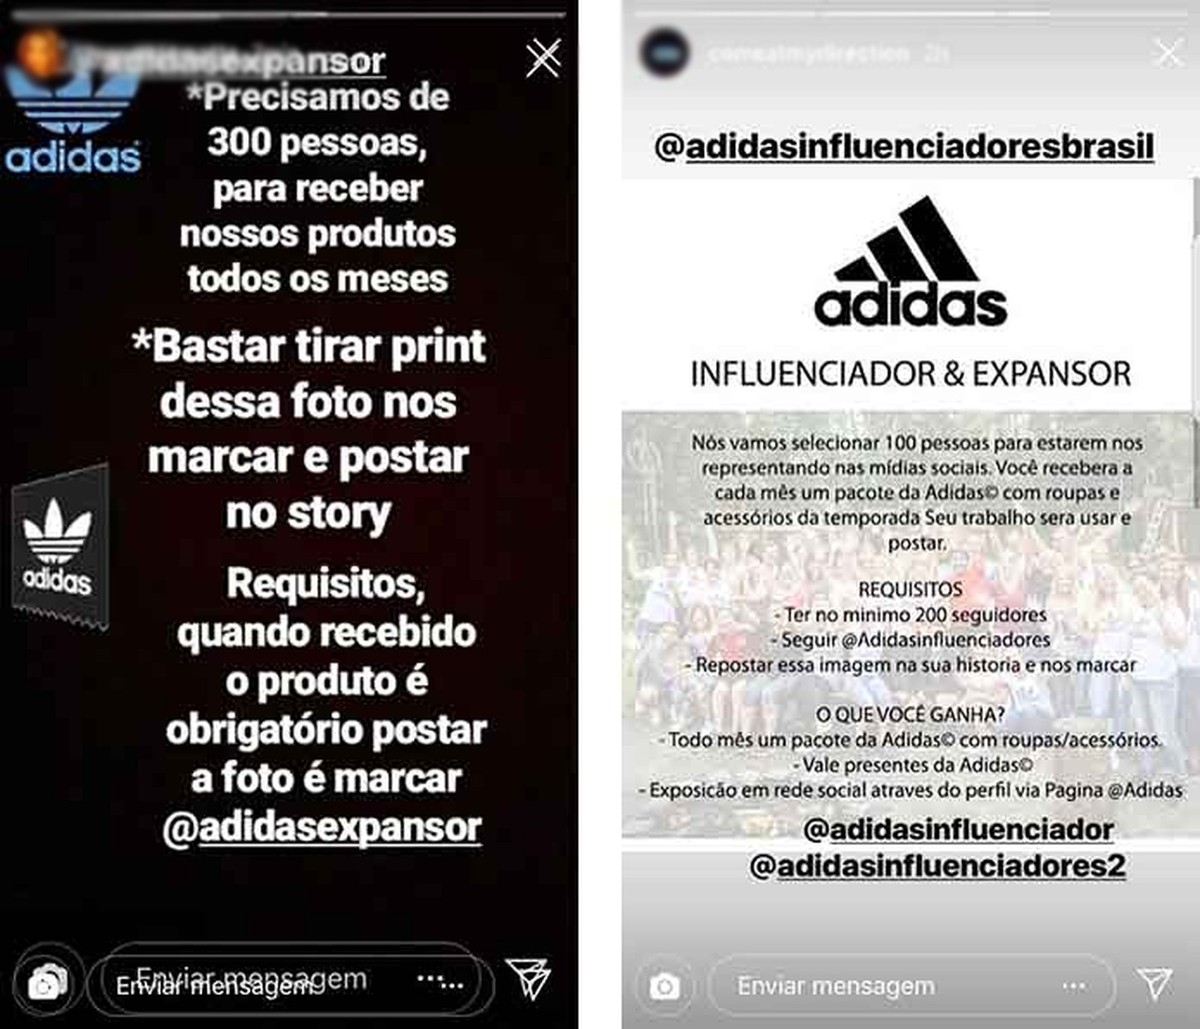 Oefening Stereotype gips Influenciador da Adidas: falsa promoção circula nas redes sociais | Redes  sociais | TechTudo